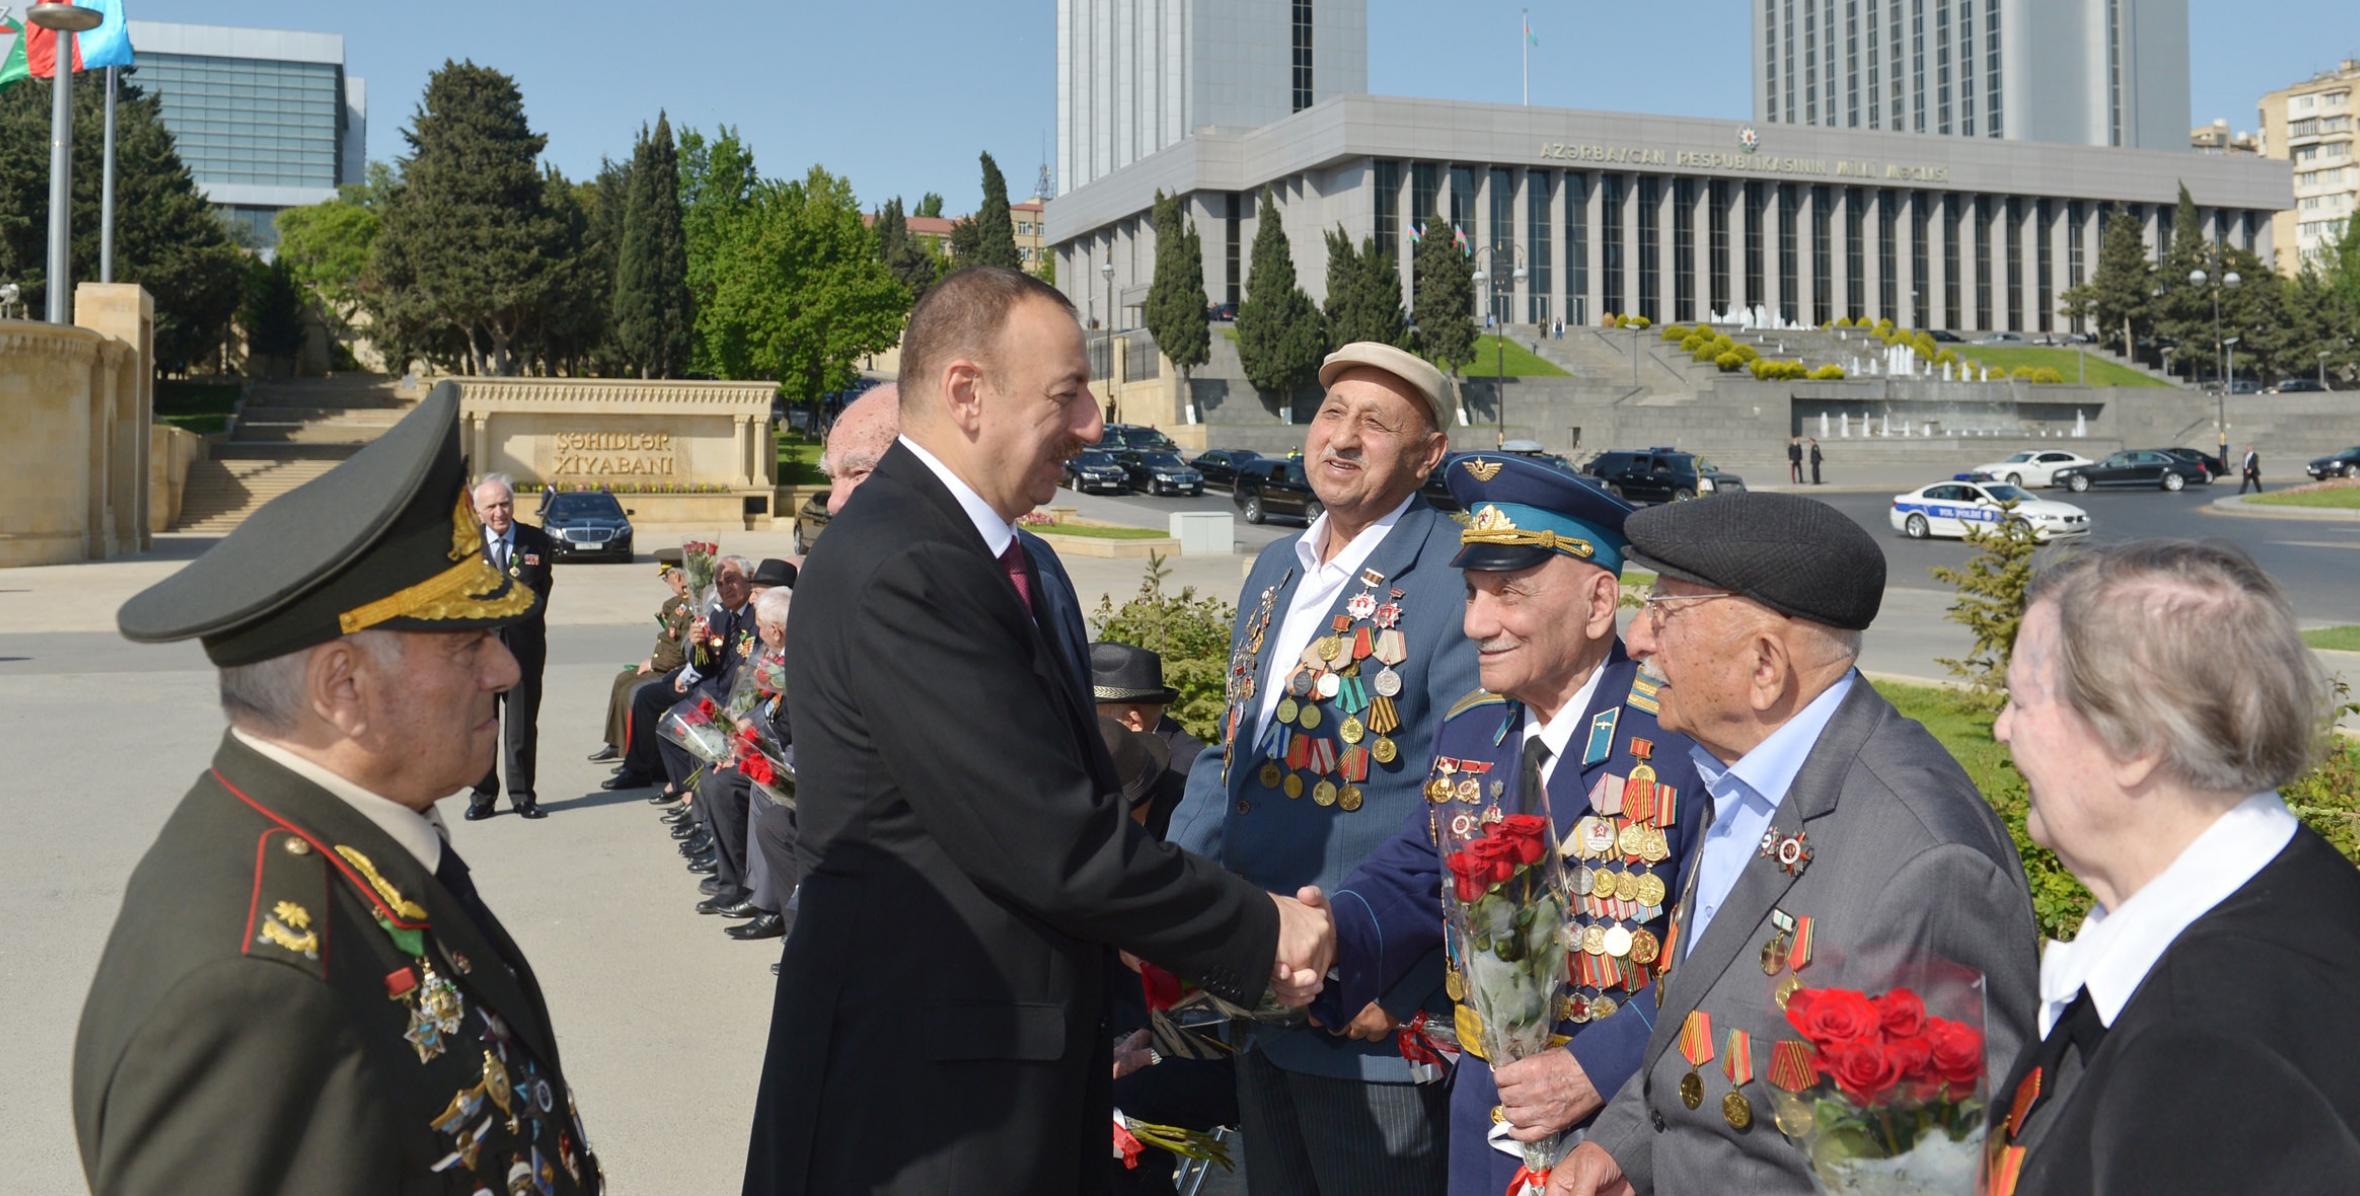 Ильхам Алиев принял участие в церемонии, состоявшейся в Баку в связи с праздником Победы - 9 Мая